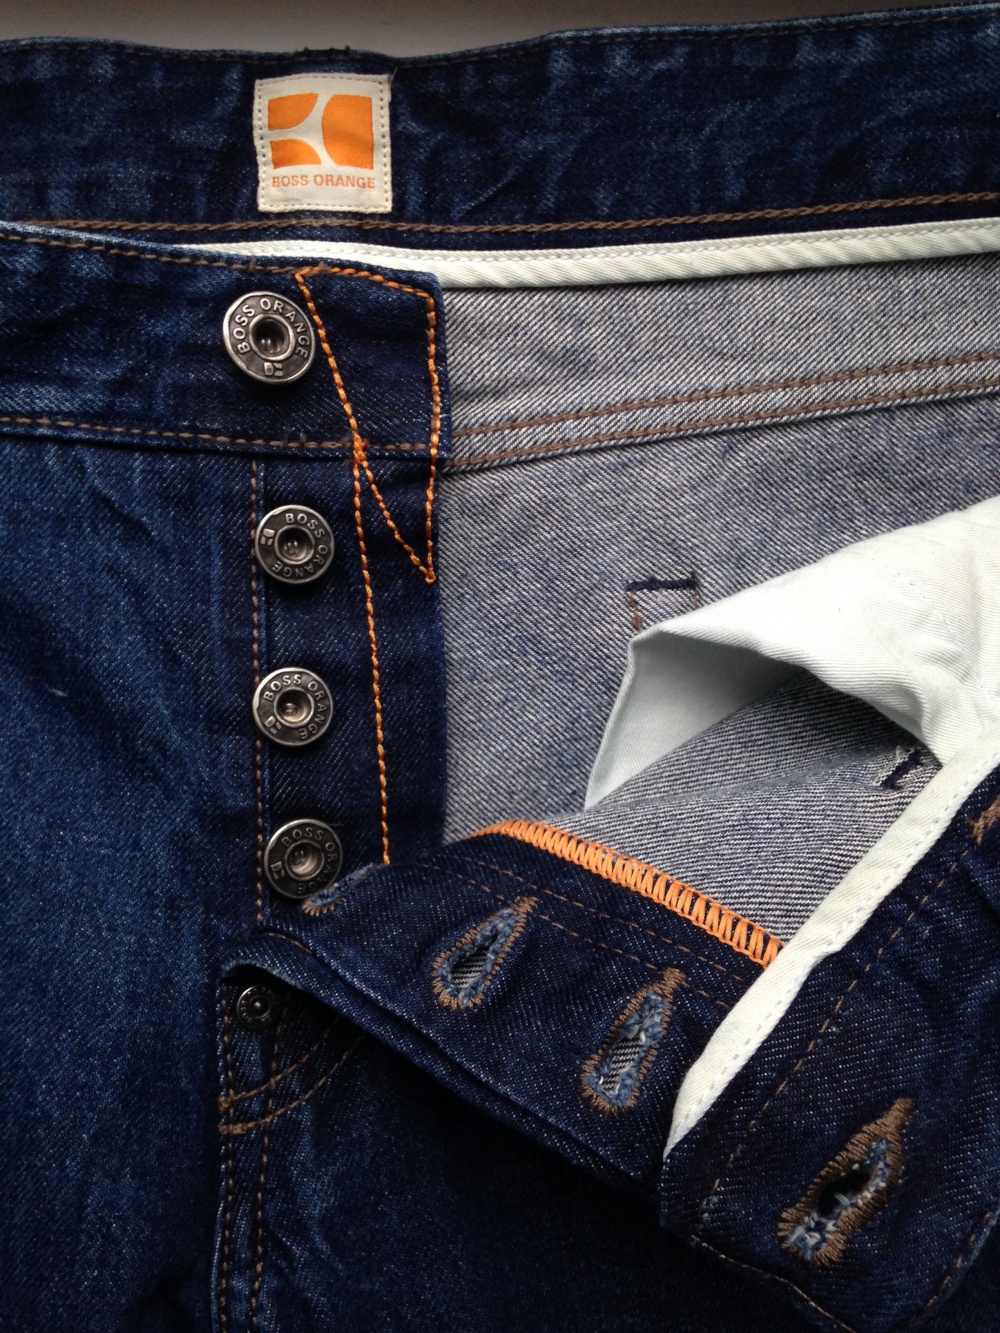 Мужские джинсы " ВOSS ORANGE ", 54-56 размер.